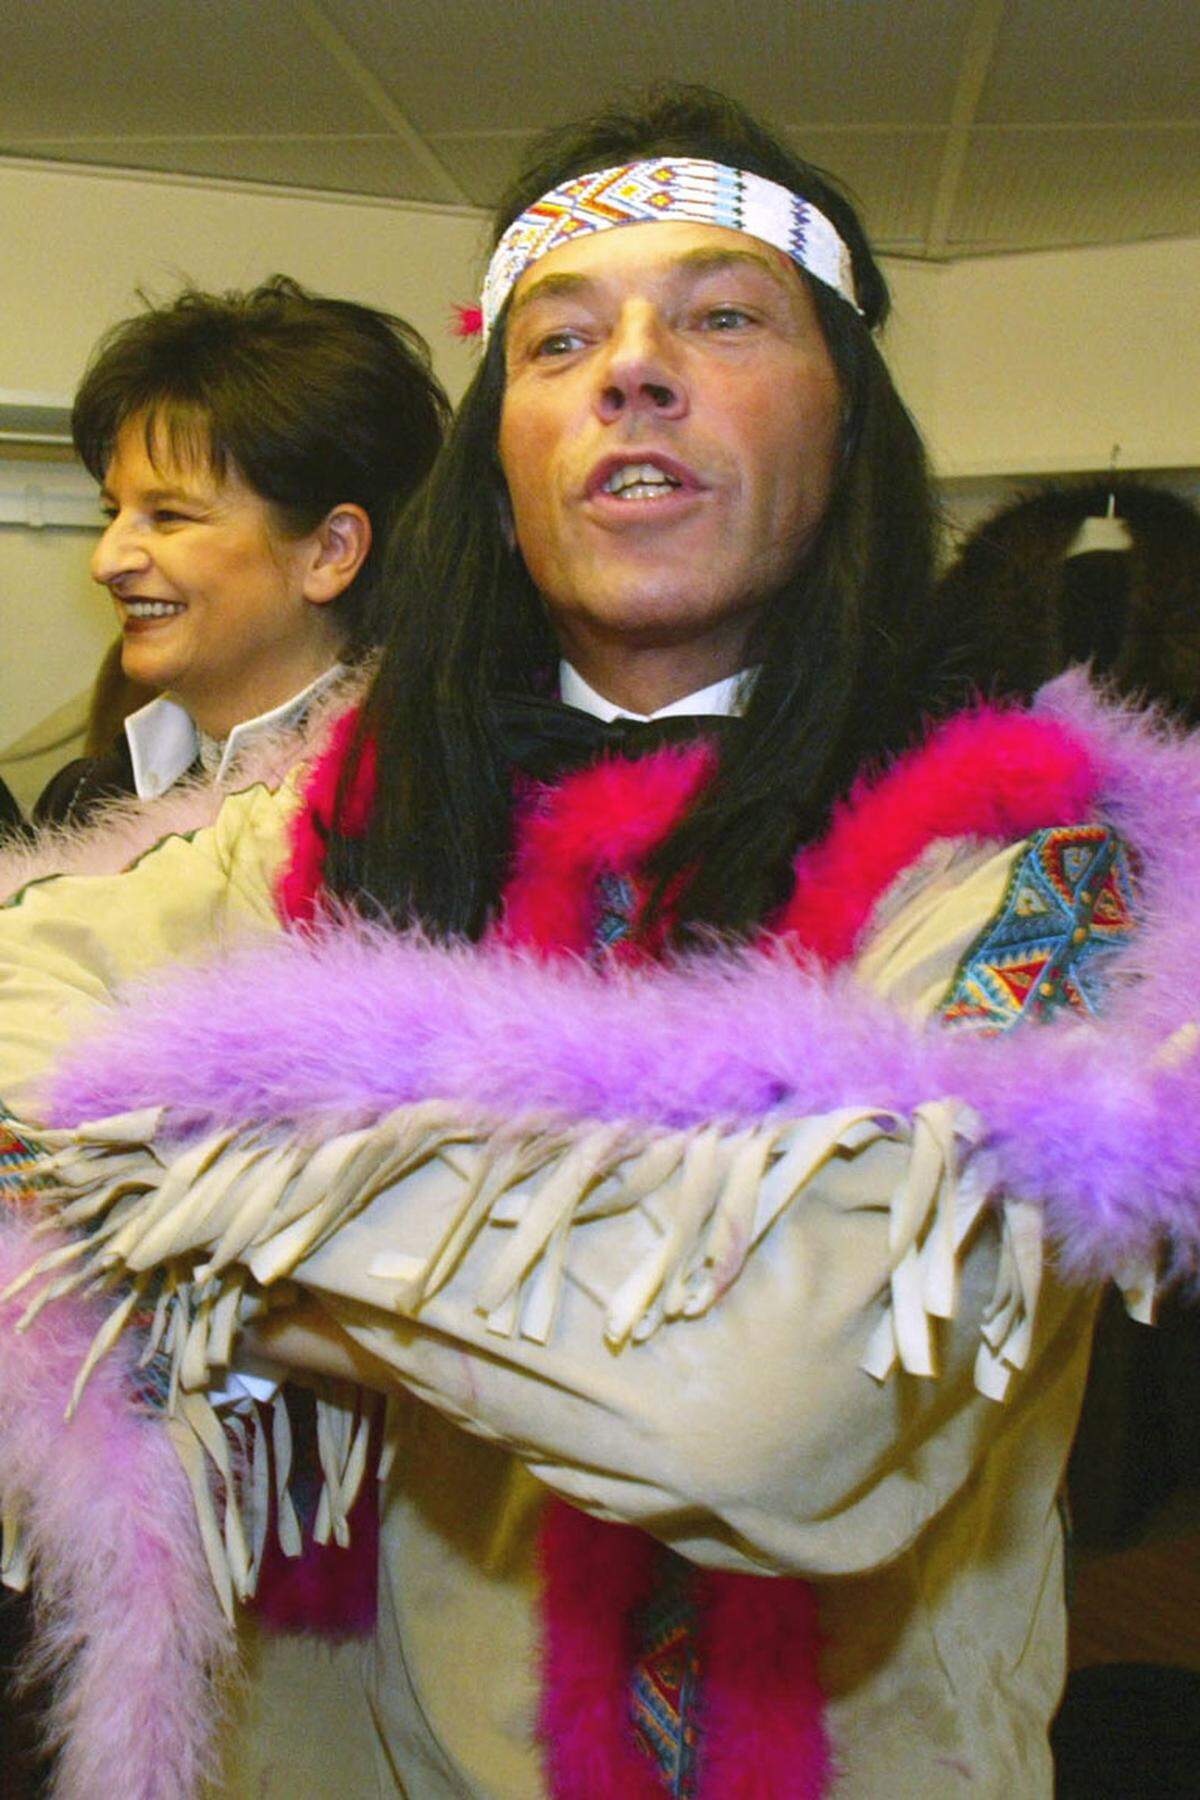 Dörflers Vorgänger als Landesvater, der mittlerweile verstorbene Jörg Haider (FPÖ/BZÖ), schlüpfte zur Faschingszeit ebenfalls gerne in Kostüme: 2002 präsentierte er sich etwa als Indianer mit roter und violetter Federboa. (Am Bild: Haider mit Ex-FP-Vizekanzlerin Susanne Riess-Passer)